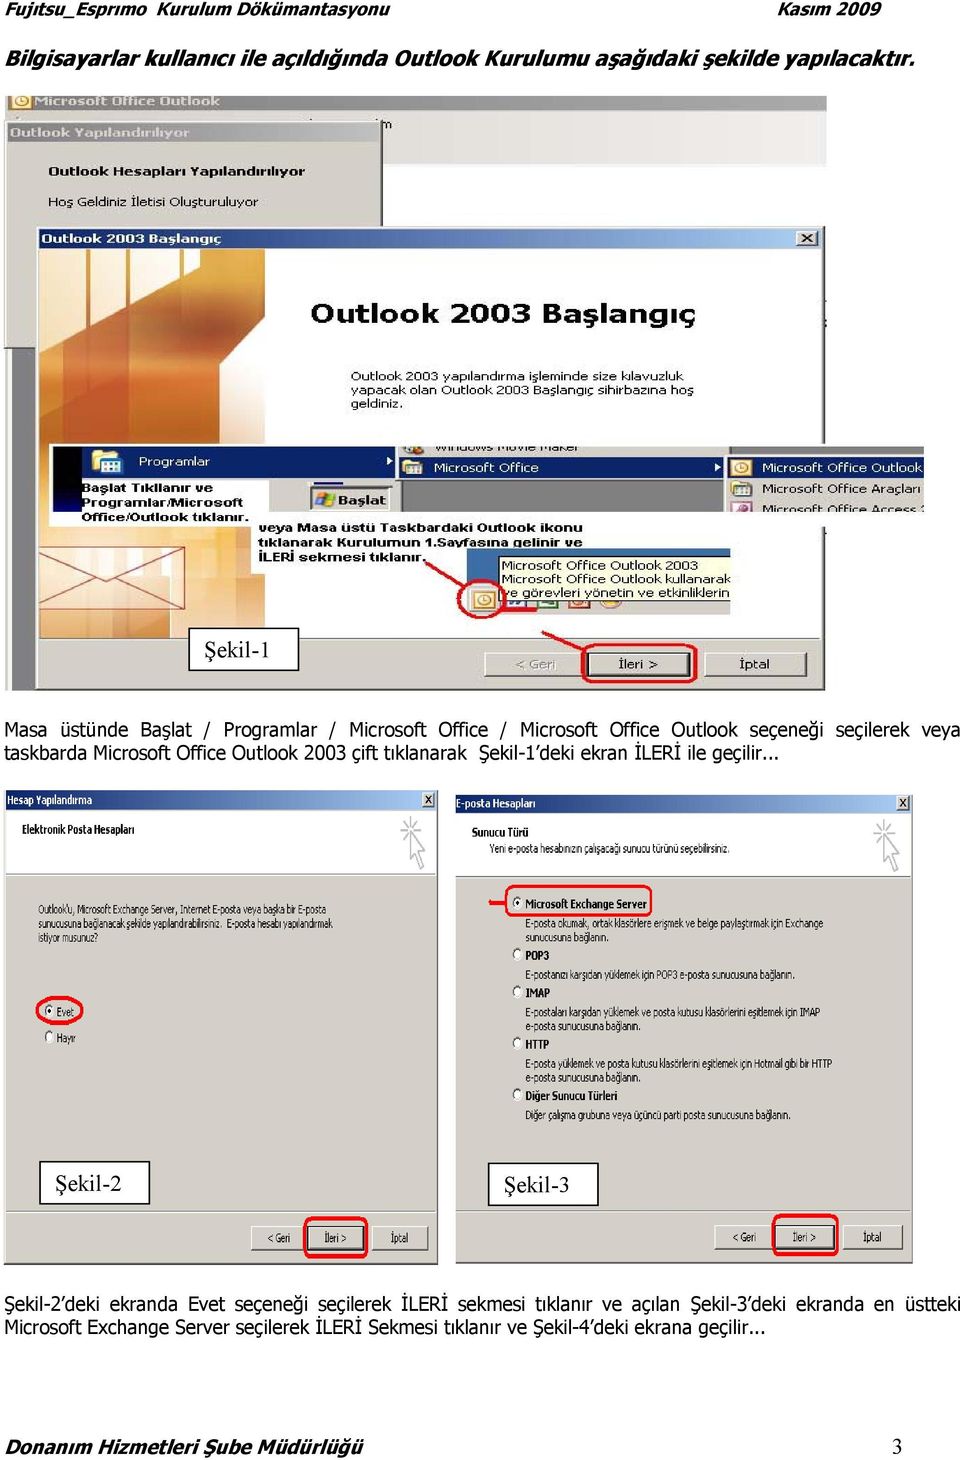 Outlook 2003 çift tıklanarak Şekil-1 deki ekran İLERİ ile geçilir.